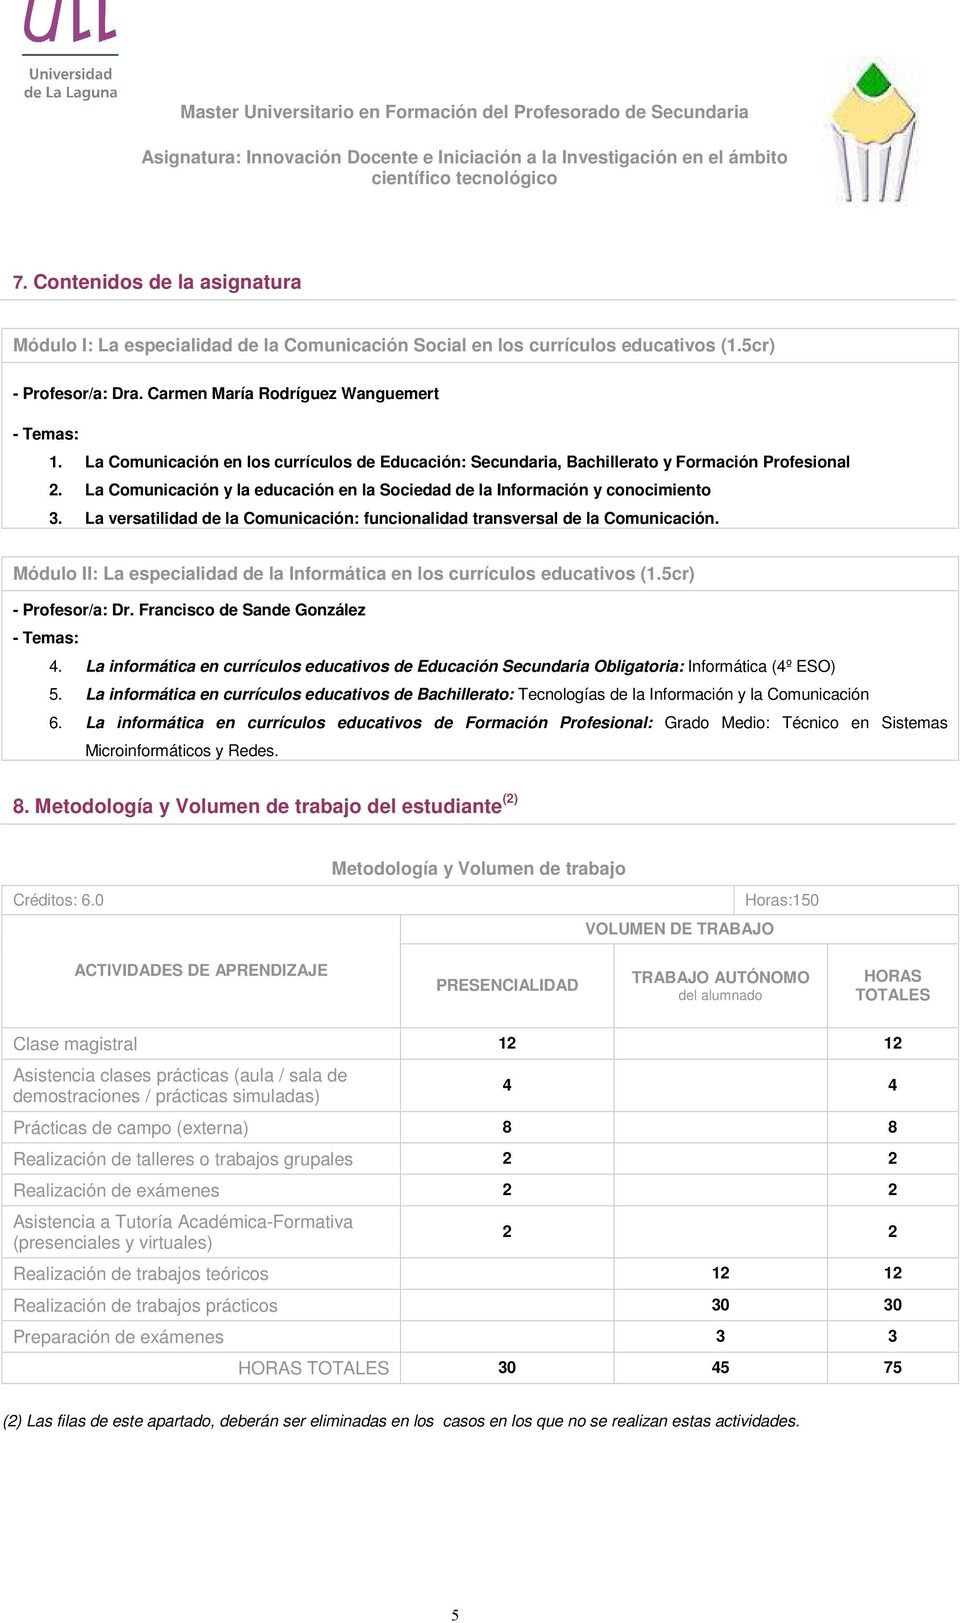 La versatilidad de la : funcionalidad transversal de la. Módulo II: La especialidad de la en los currículos educativos (1.5cr) - Profesor/a: Dr. Francisco de Sande González - Temas: 4.